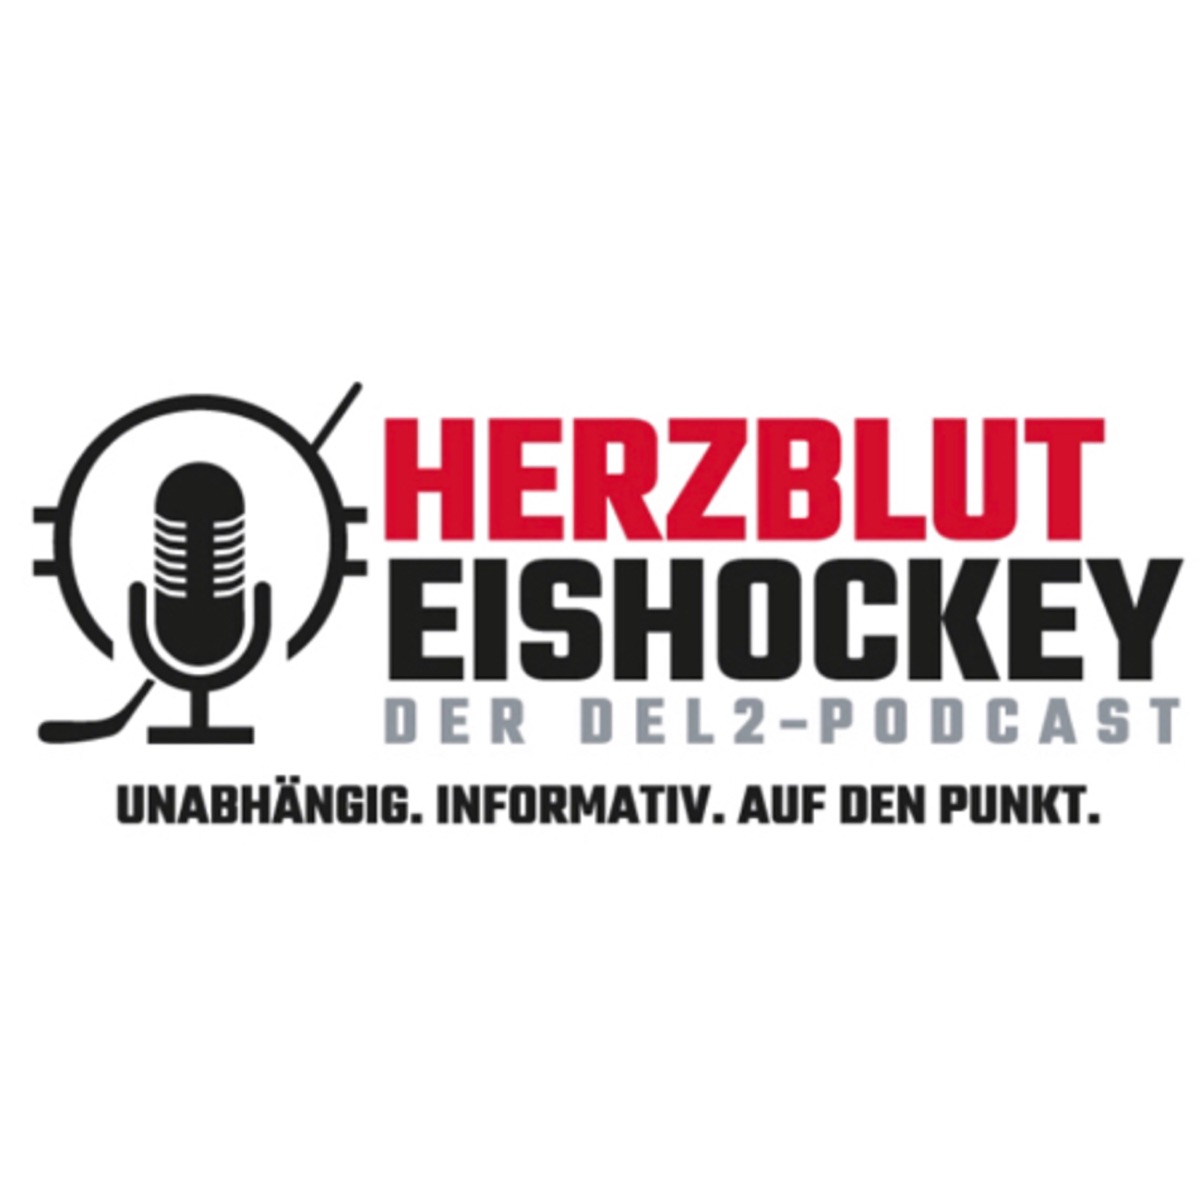 Herzblut Eishockey - Der DEL2